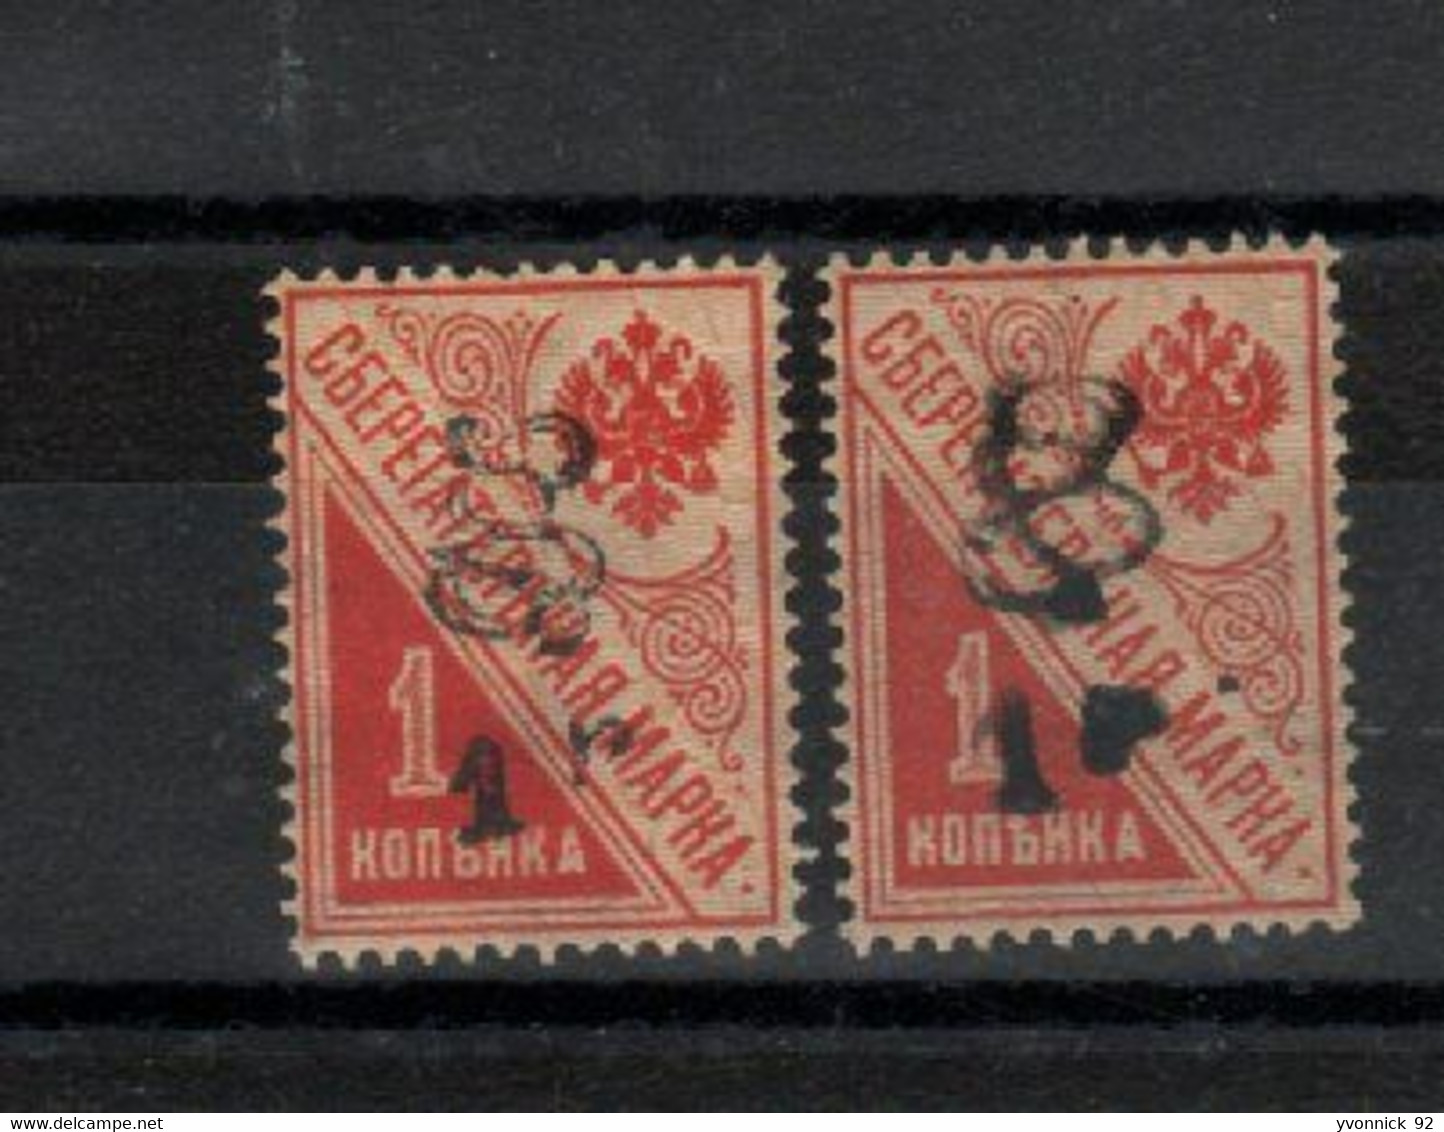 Arménie _2 Timbres De Russie Caisse épargne ( 1920 ) N°77 - Armenië